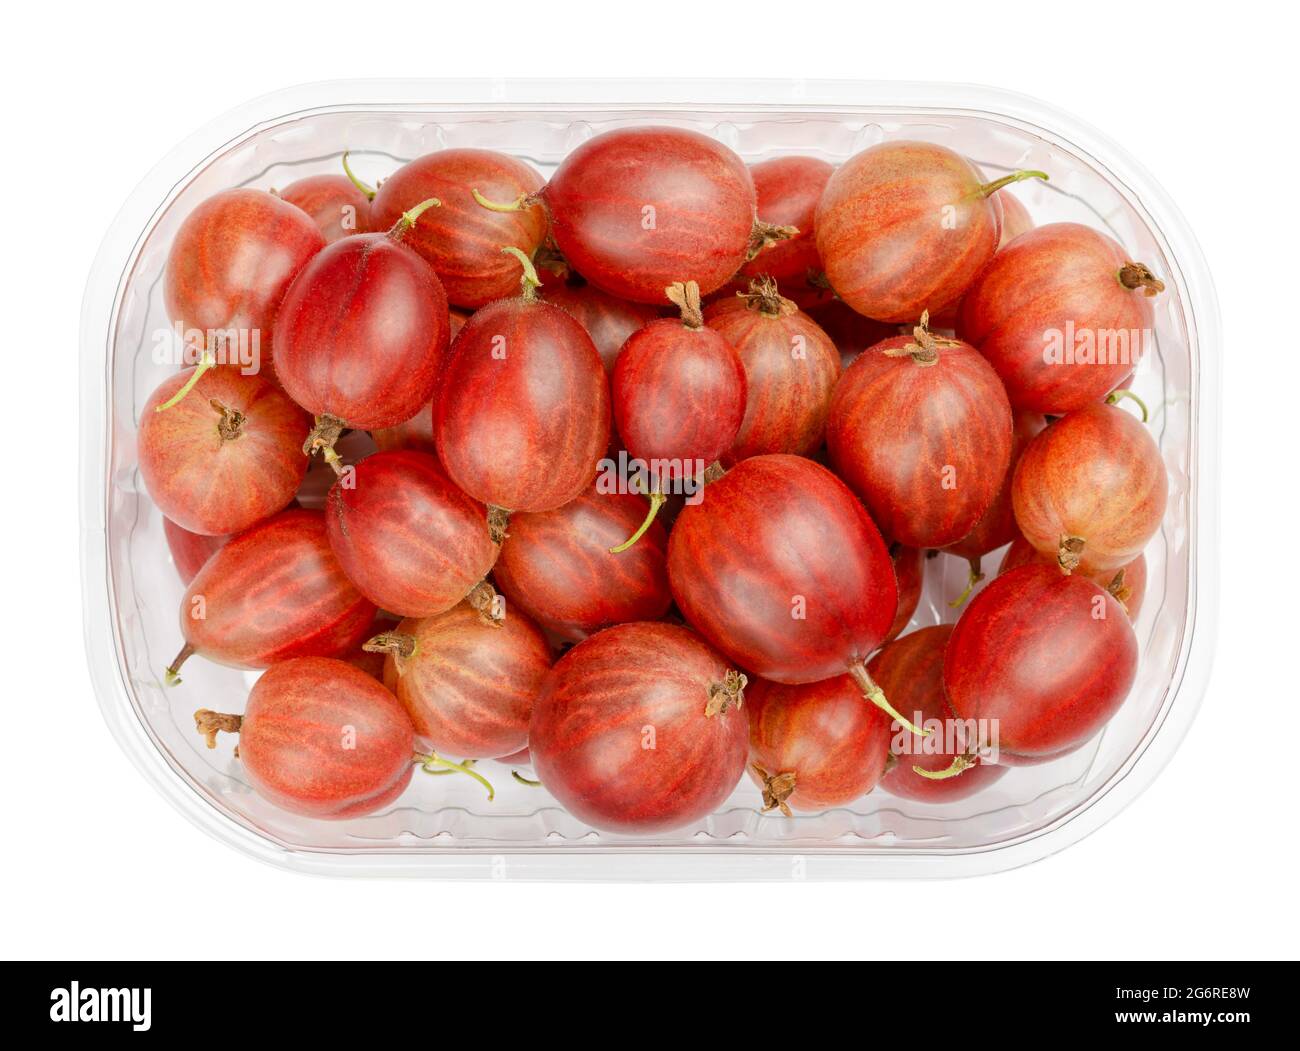 Rote Stachelbeeren in einem Plastikbehälter. Frische und reife Beeren, Früchte von Ribes uva-Crispa, auch europäische Stachelbeere, mit einem süßsauren Geschmack. Stockfoto